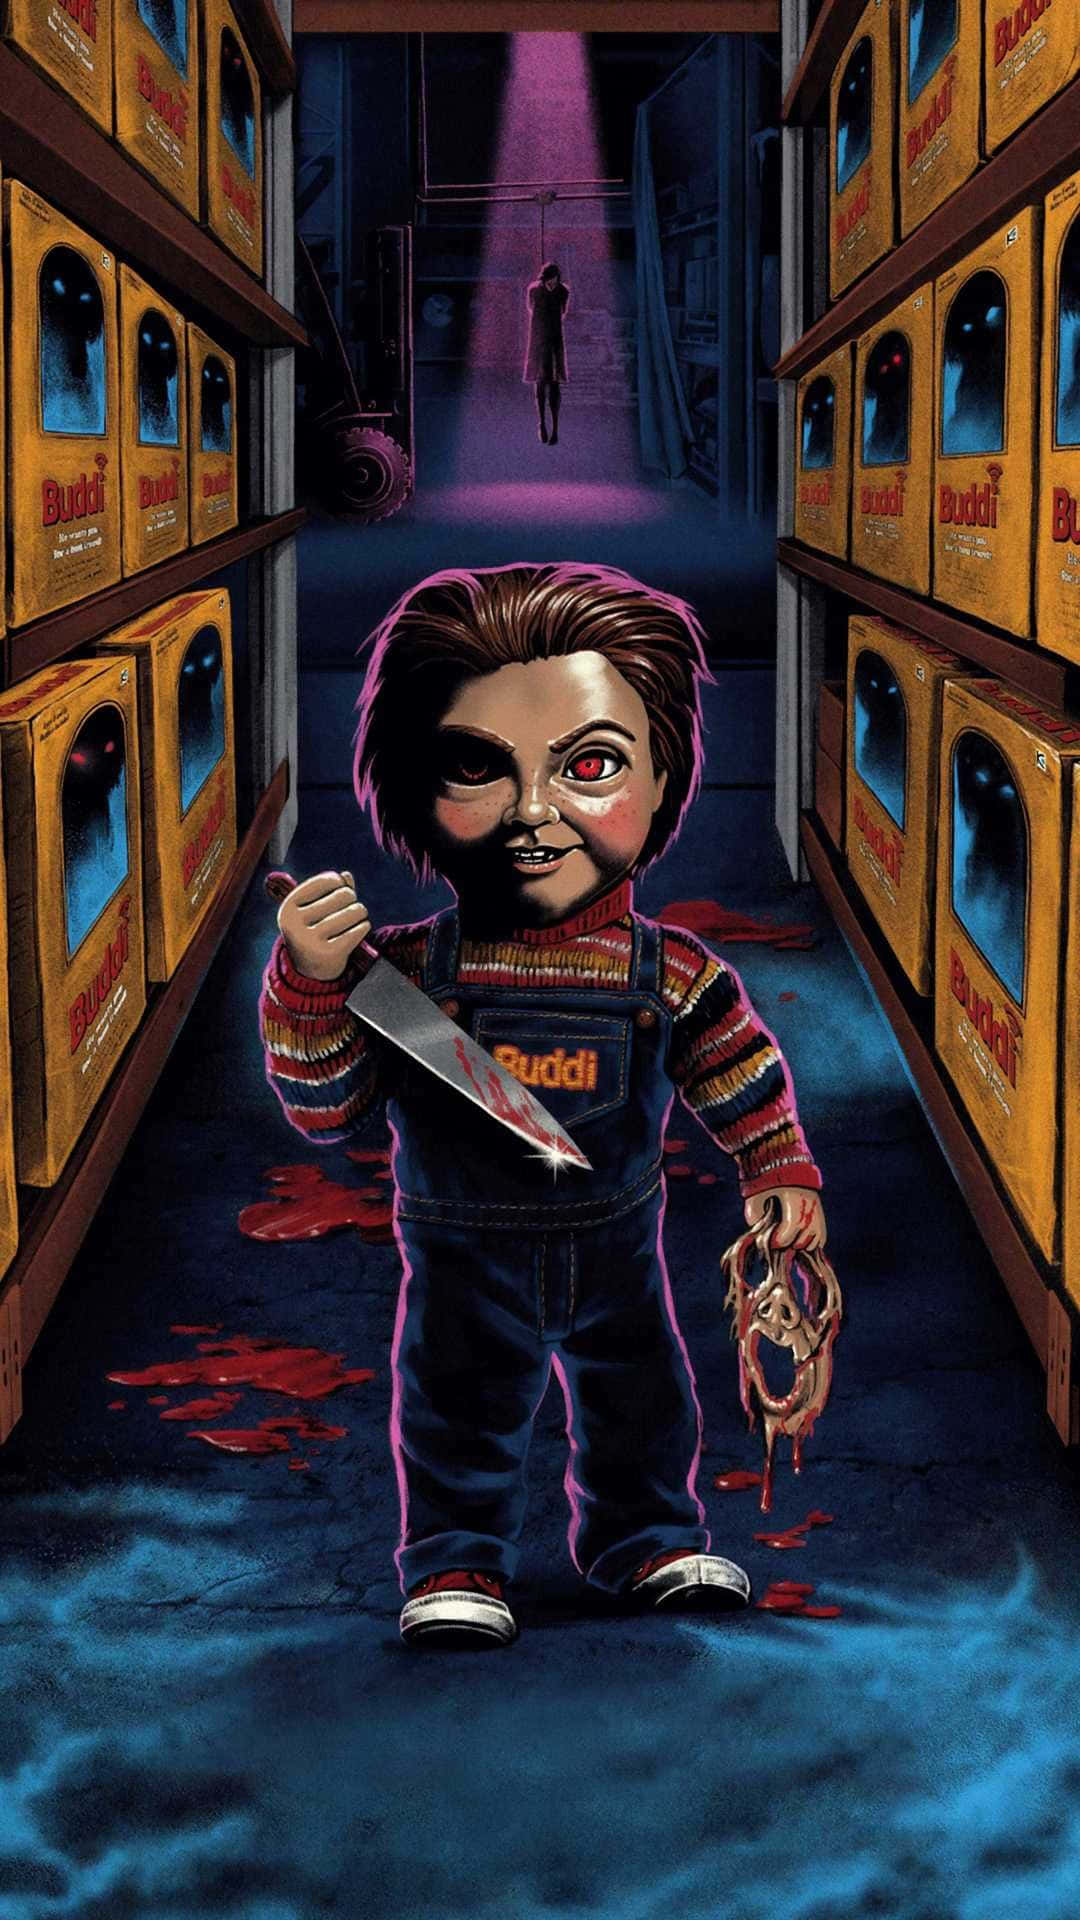 Chucky's Return